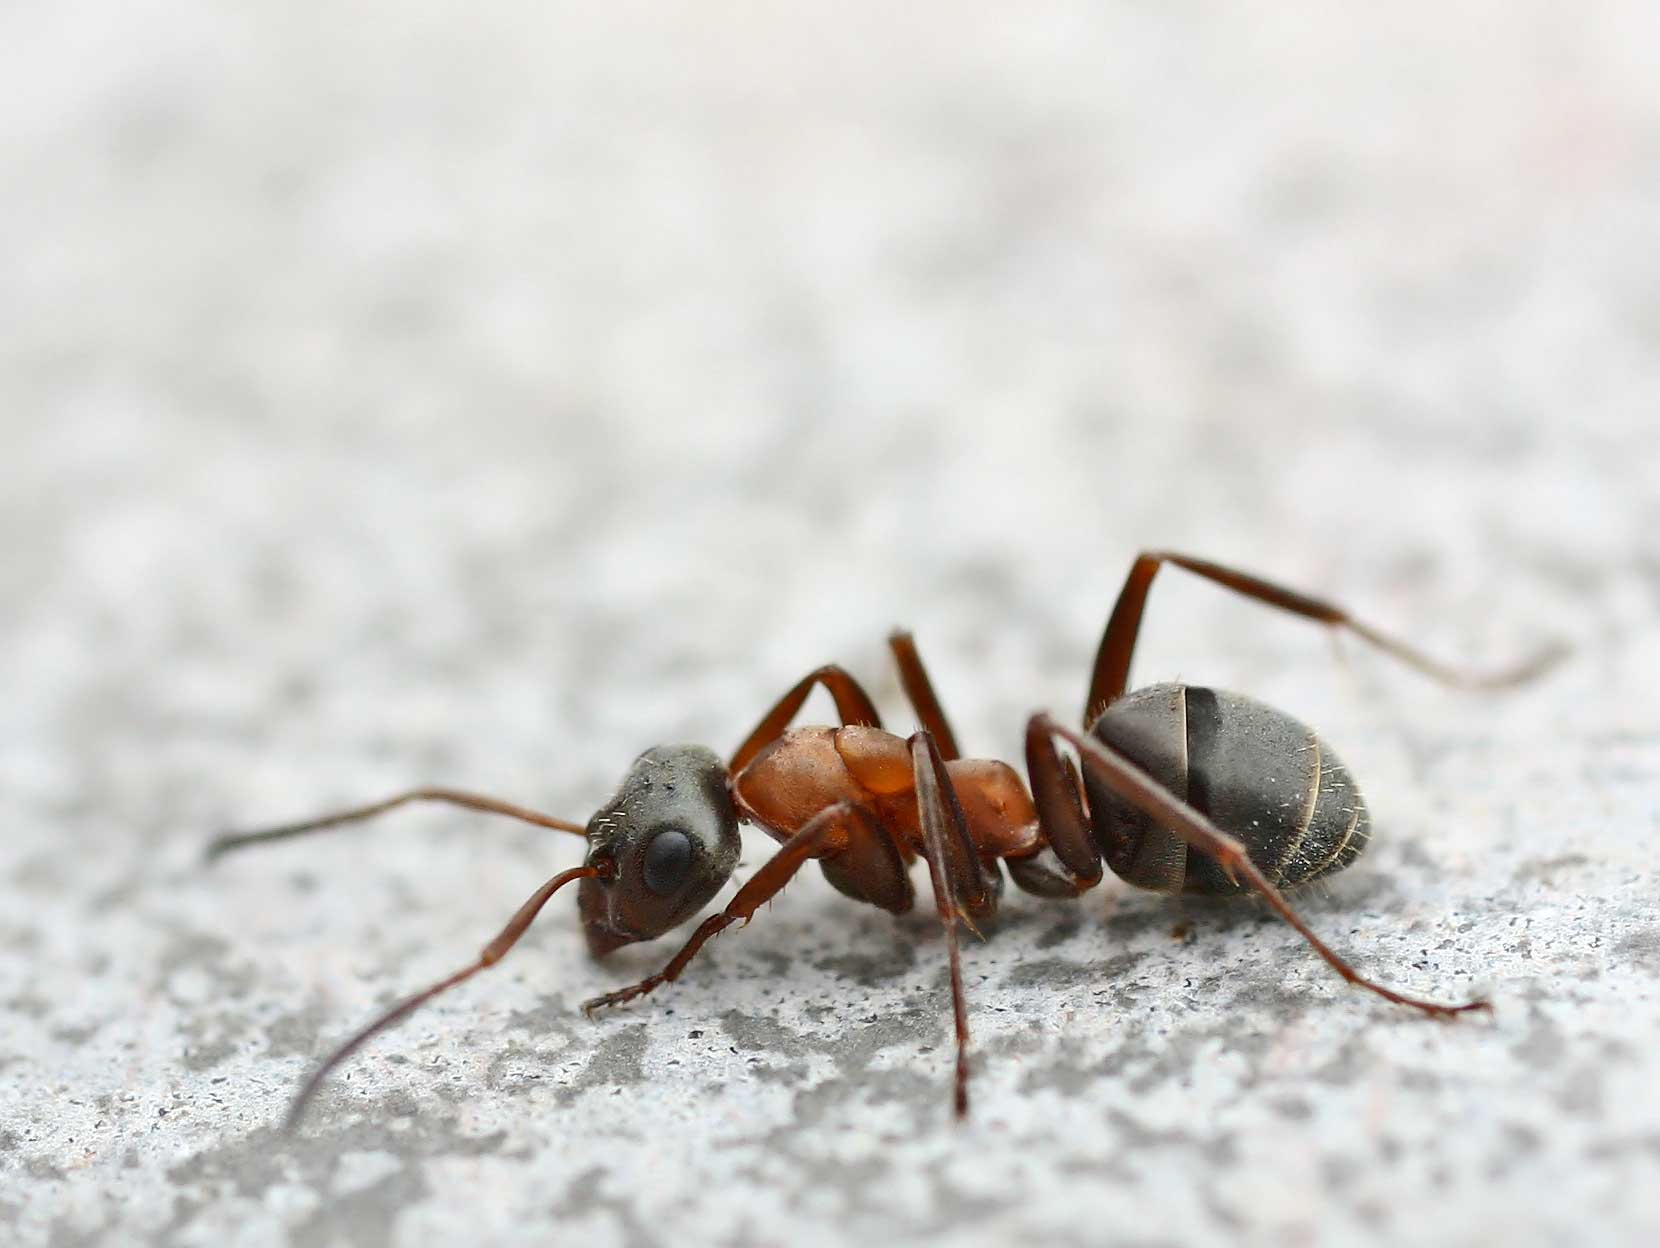 Les fourmis : 1 milliard de milliards de pépiniéristes